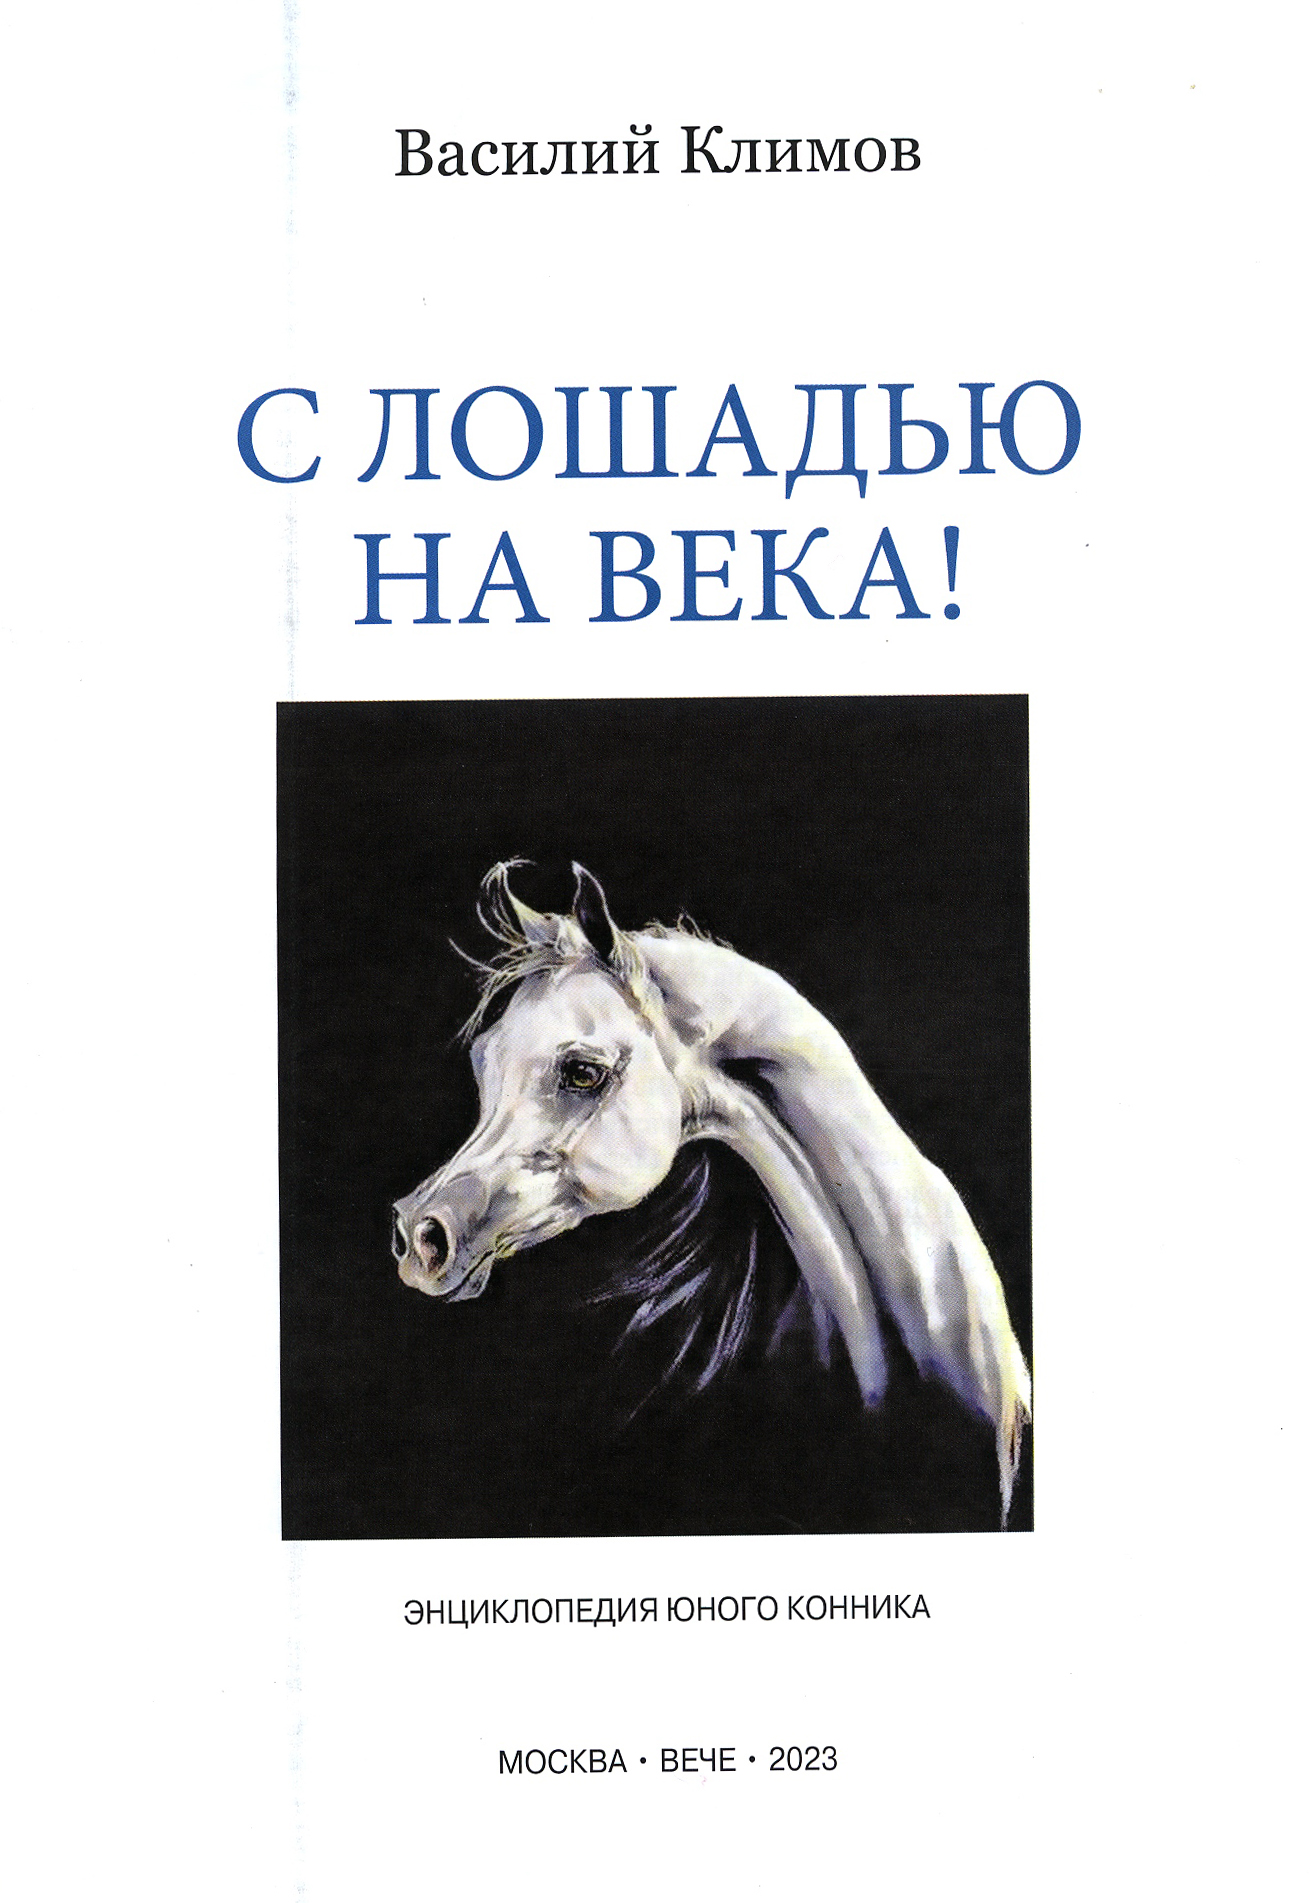 Василий Климов: Книга о лошадях - фото 2